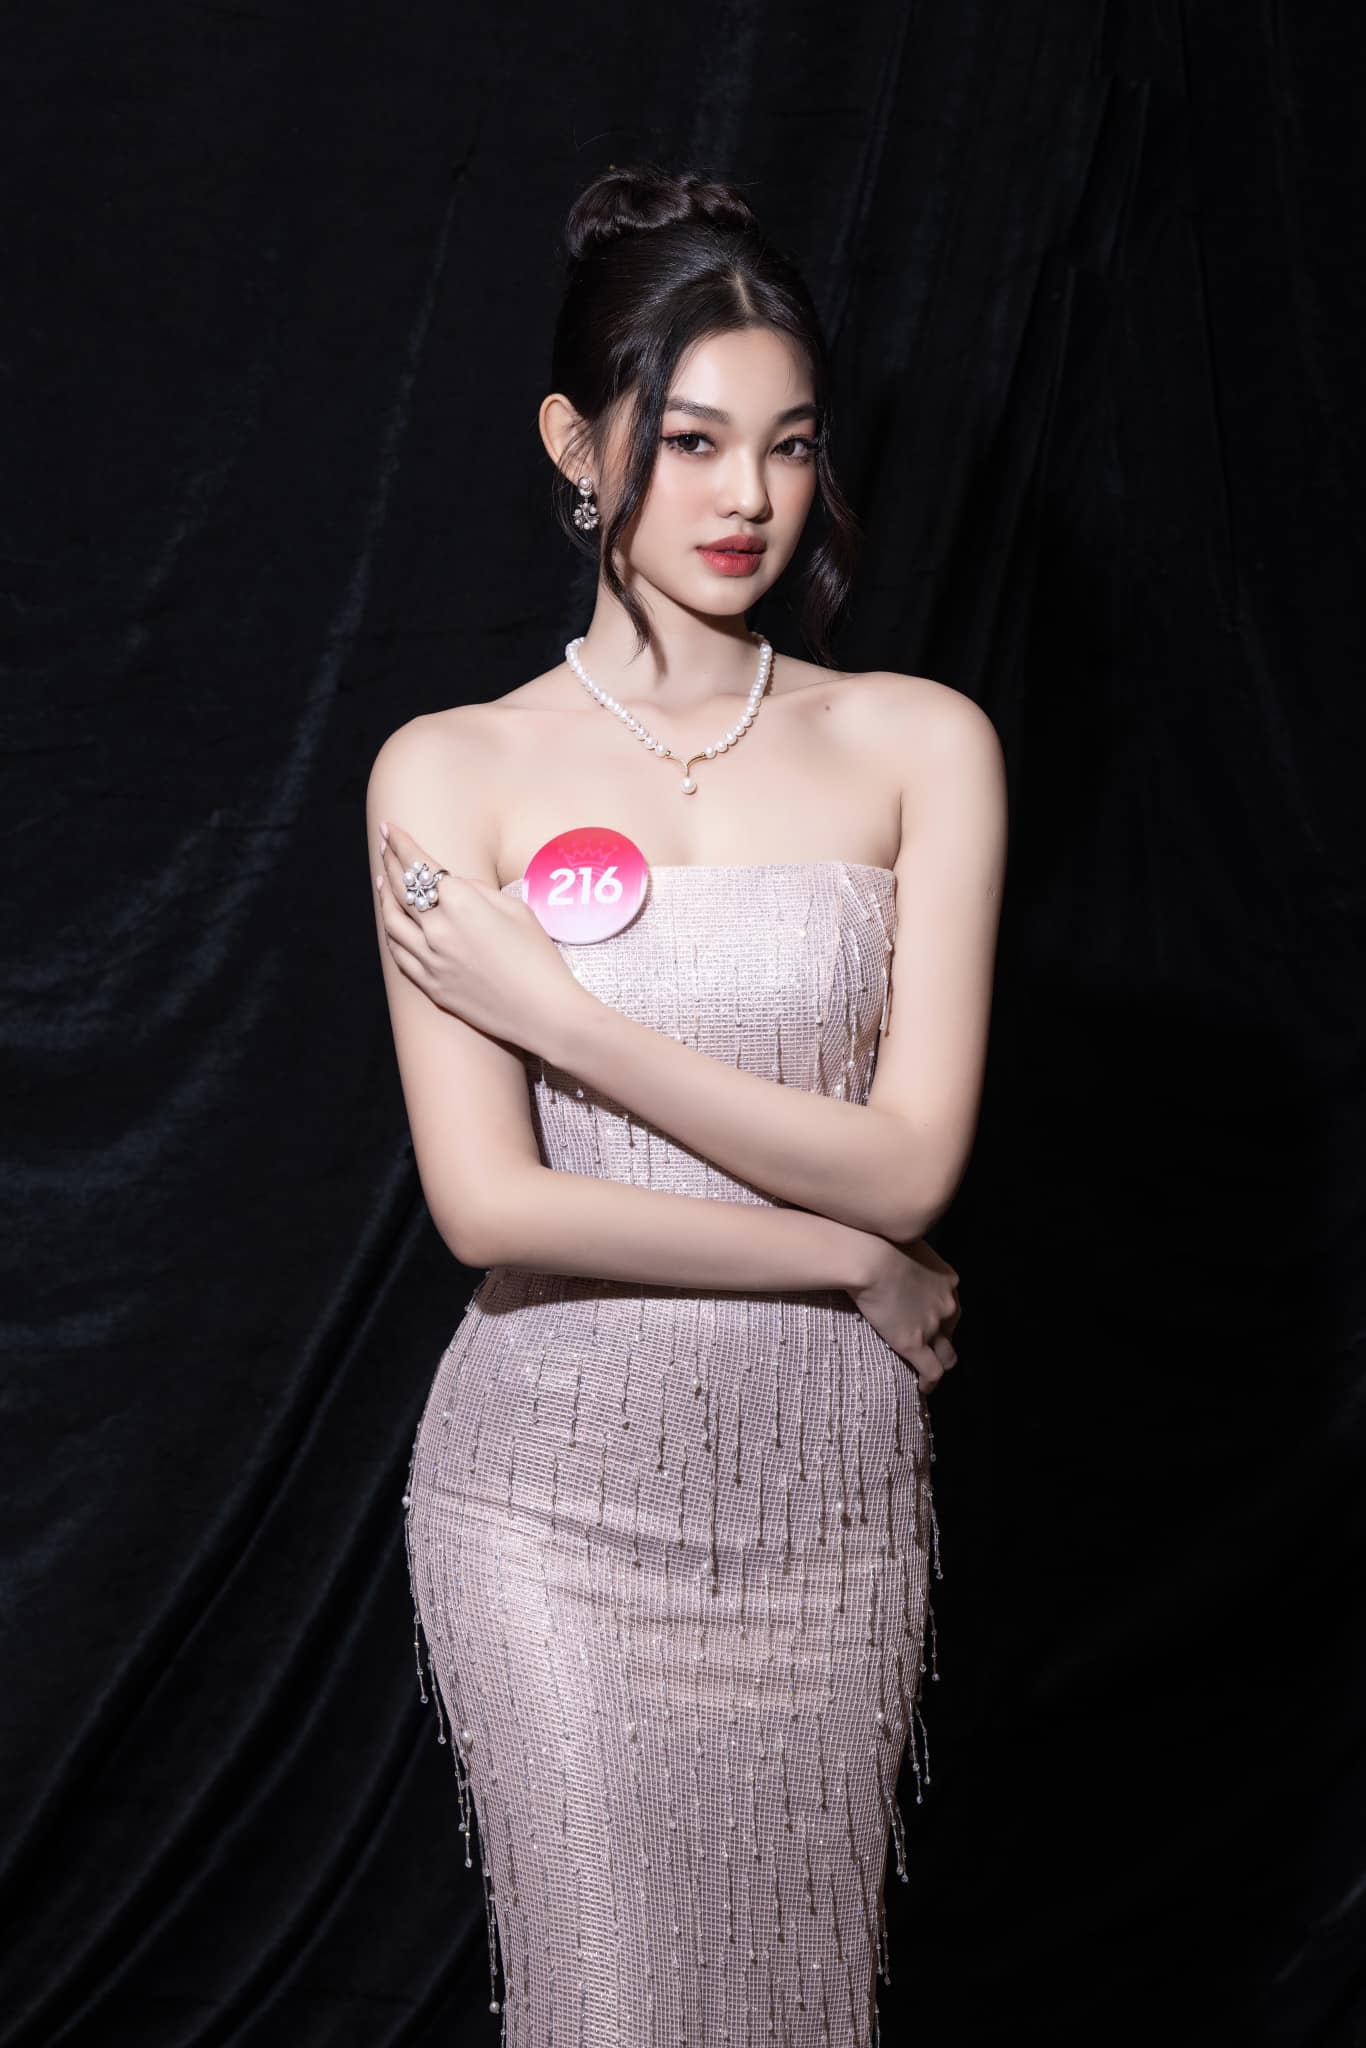 Top 5 thí sinh đáng gờm tại Hoa hậu Việt Nam 2022